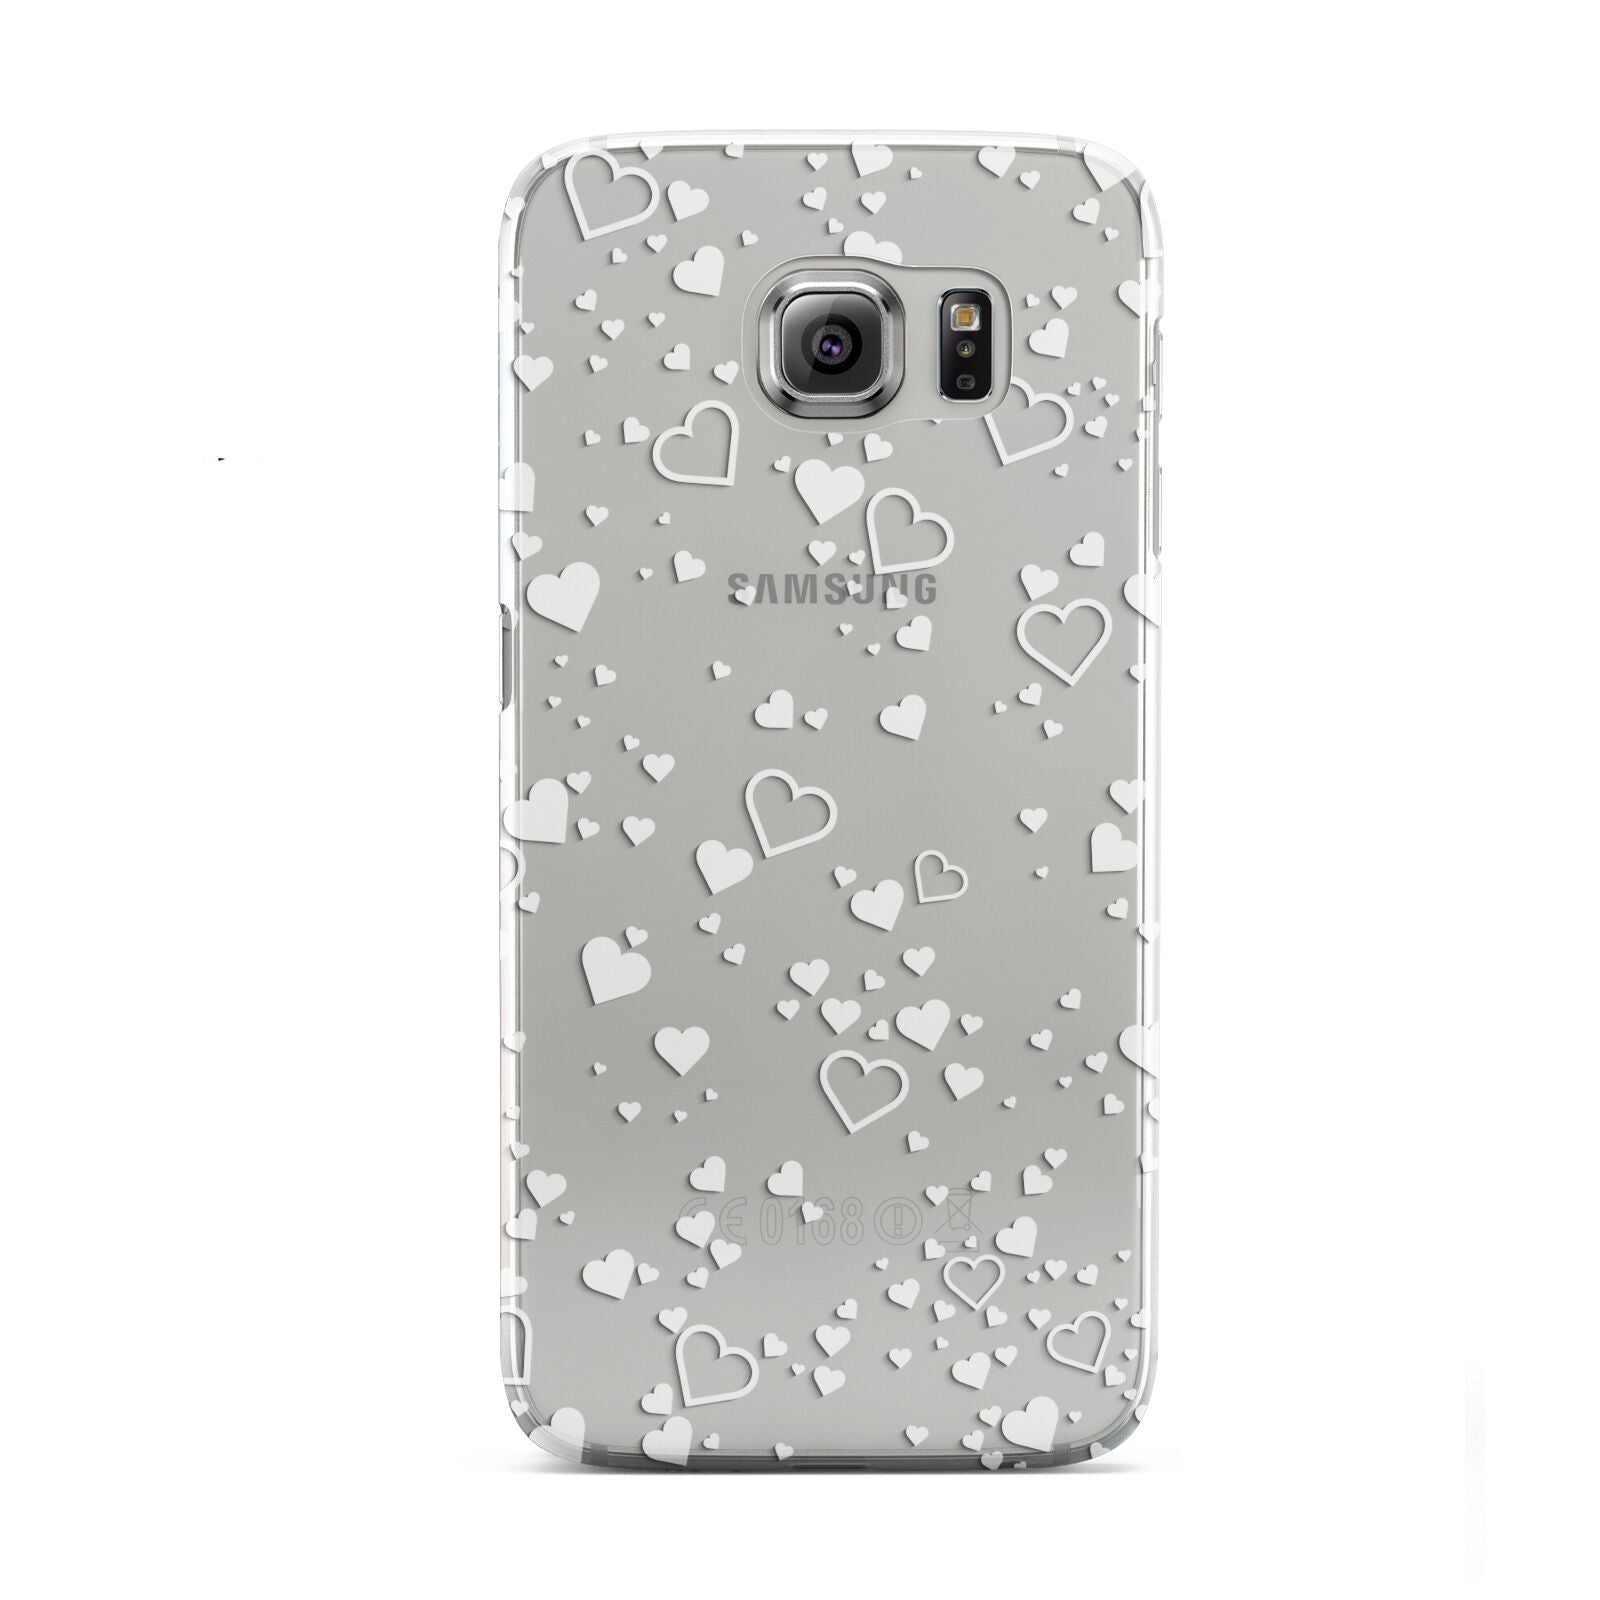 White Heart Samsung Galaxy S6 Case